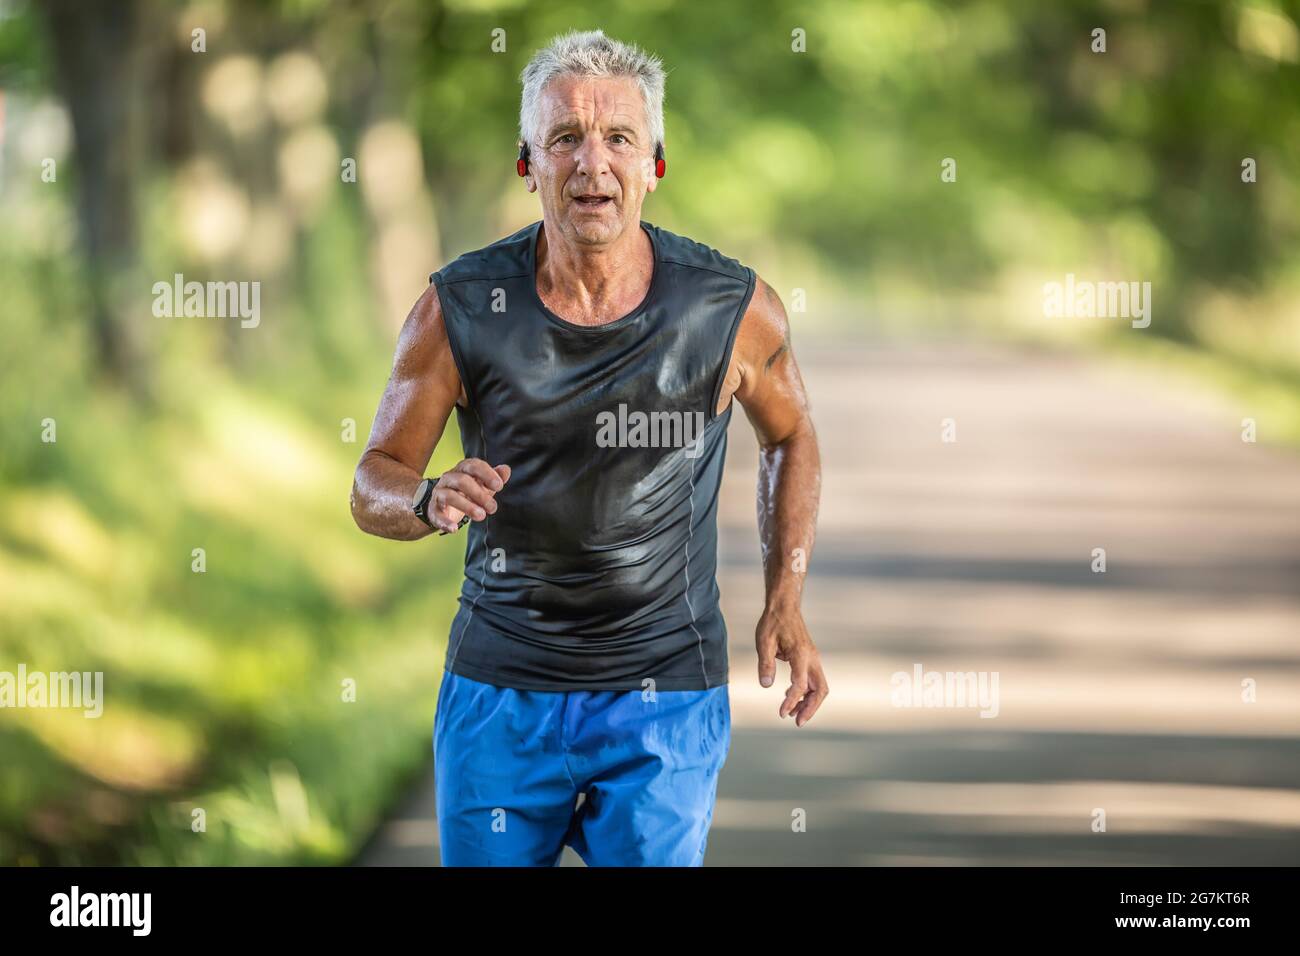 Muskulöser älterer Mann in guter Verfassung läuft im Freien und schwitzt während eines Laufs mit angeschrauben Kopfhörern. Stockfoto